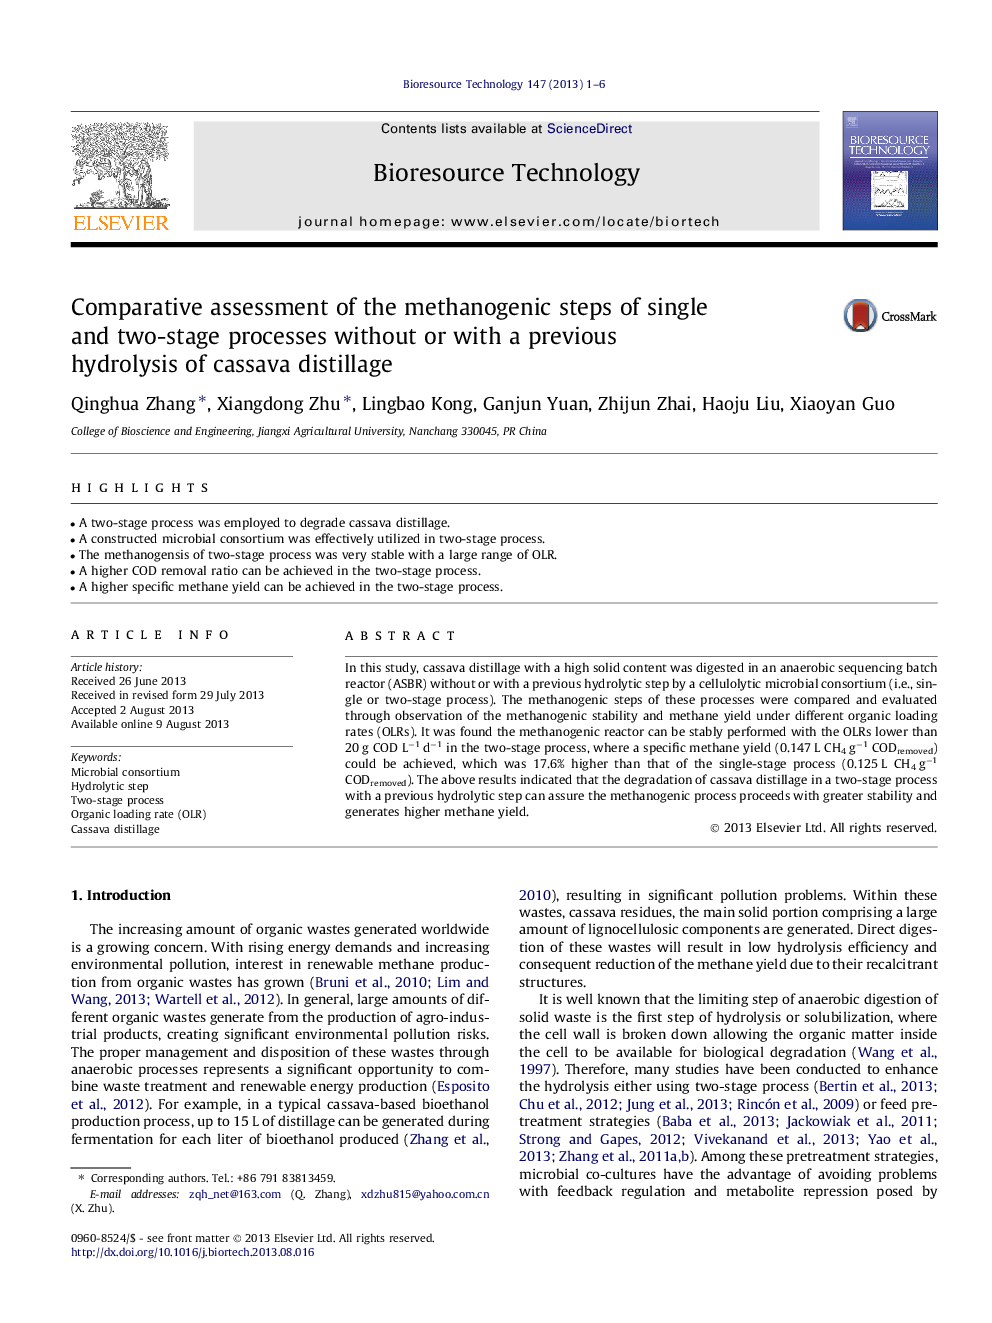 ارزیابی مقایسه ای از مراحل متانوژنیک فرآیندهای تک و دو مرحله بدون و یا با هیدرولیز قبلی از محل تقطیر منسوج 